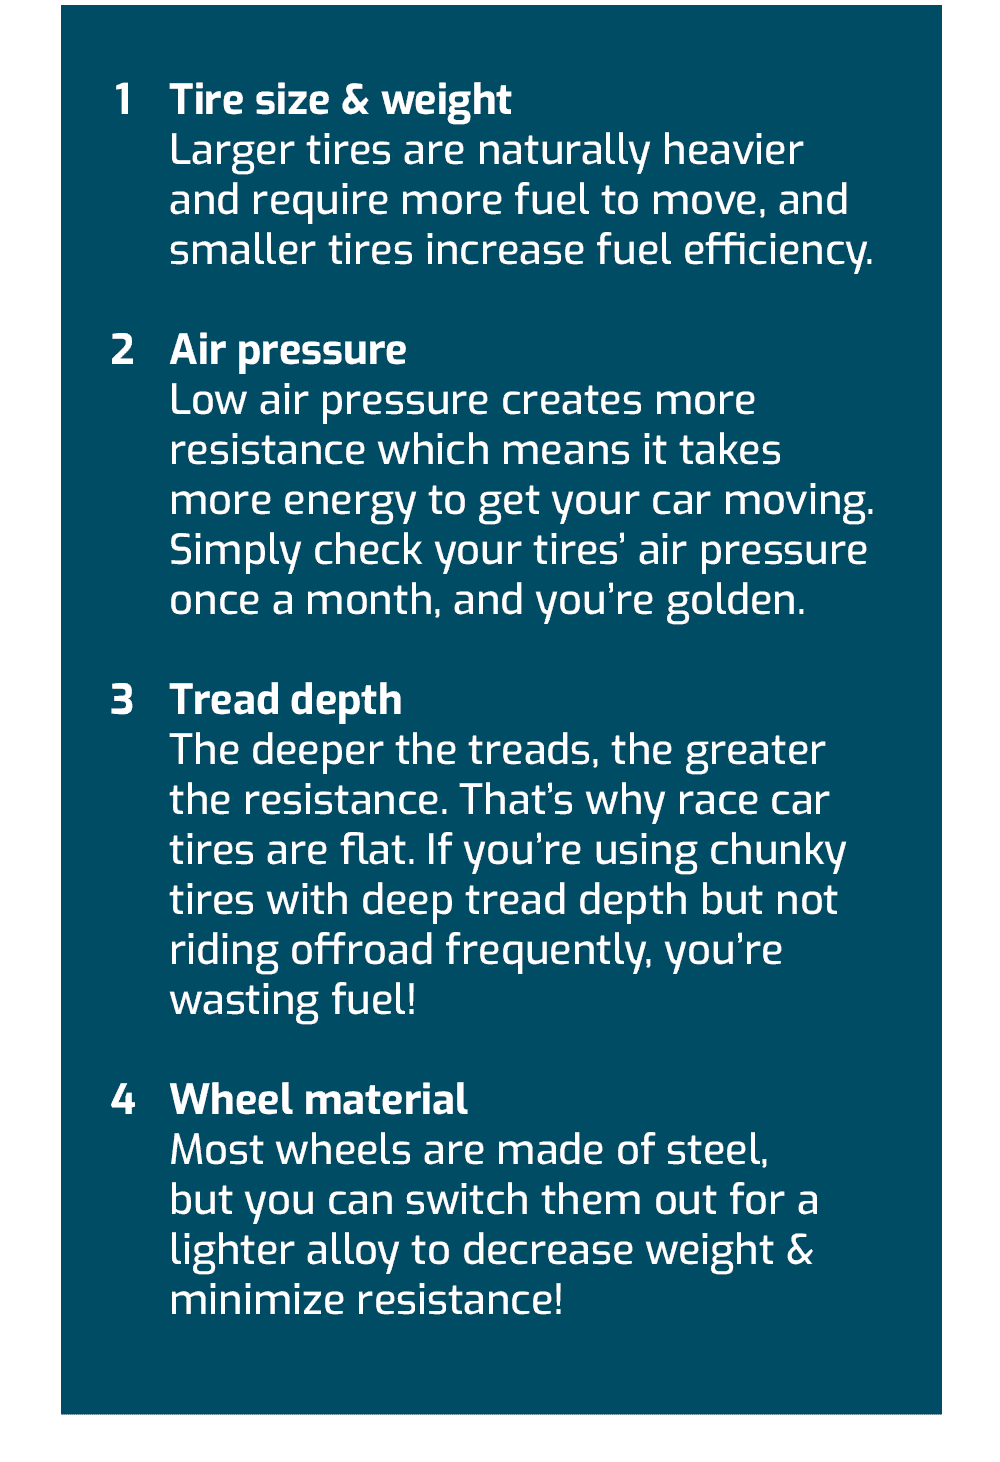 Fuel efficiency considerations